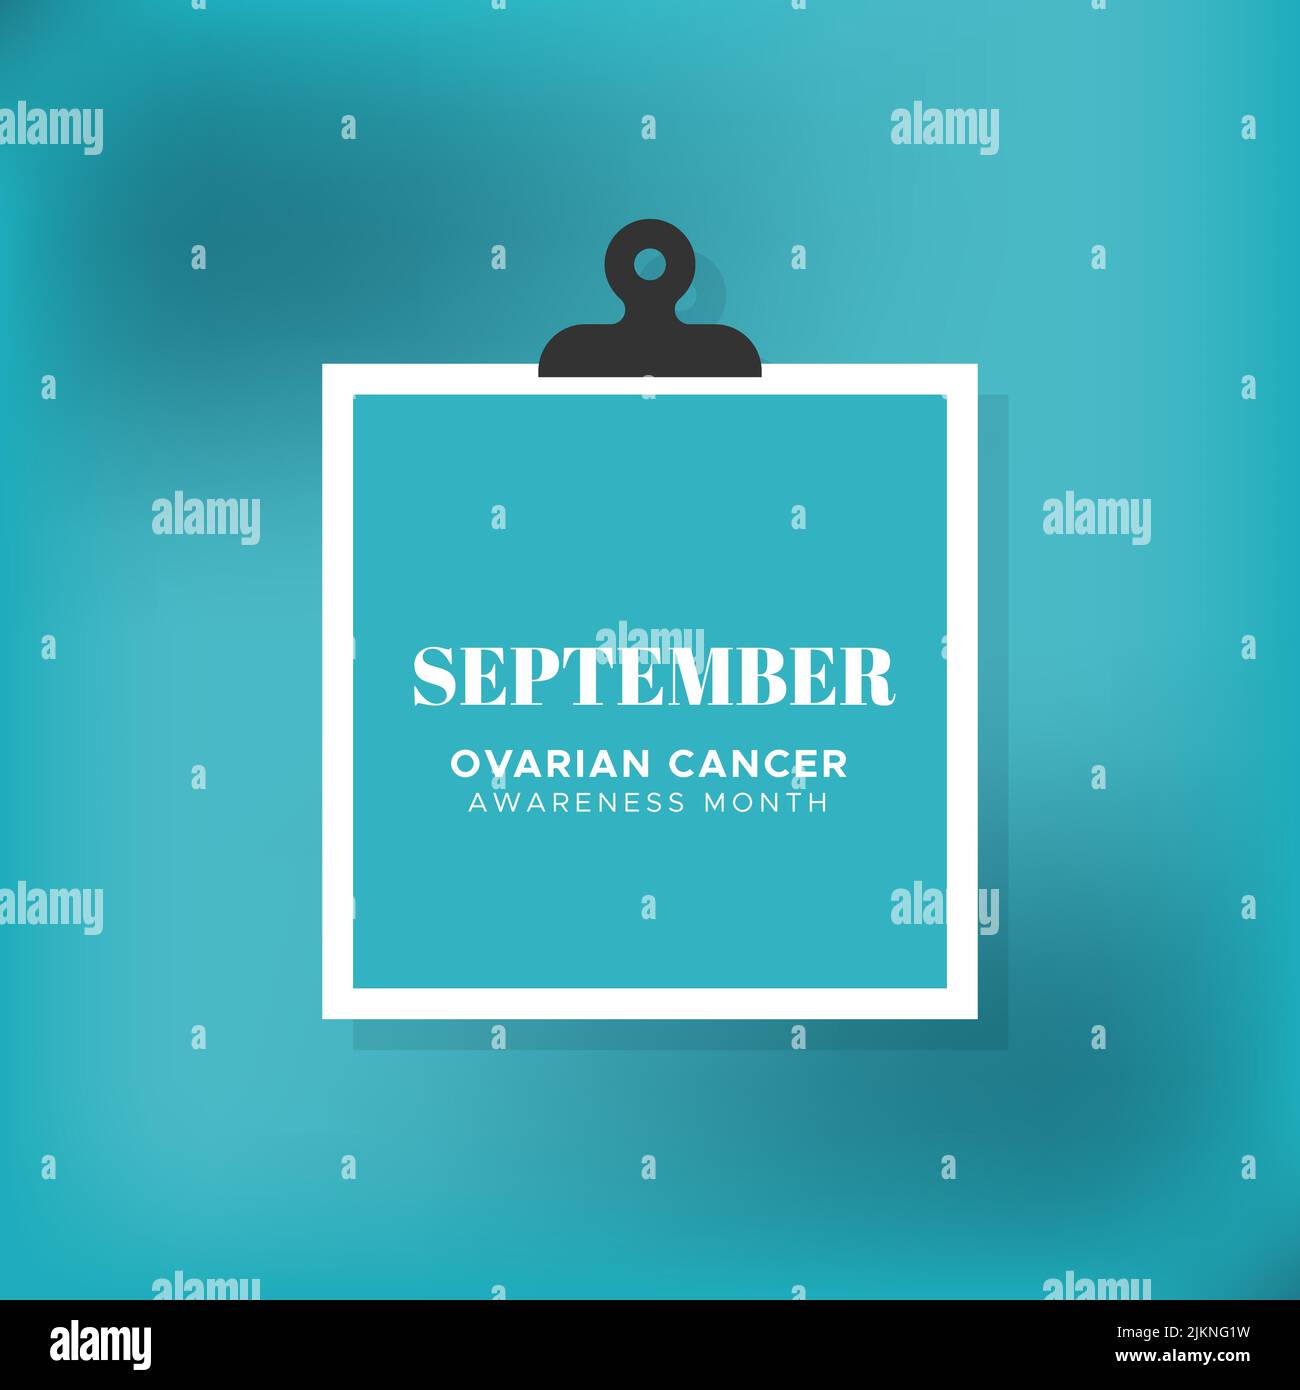 Ovarian Cancer Awareness month. September. Teal blurred background. Vector illustration, flat design Stock Vector